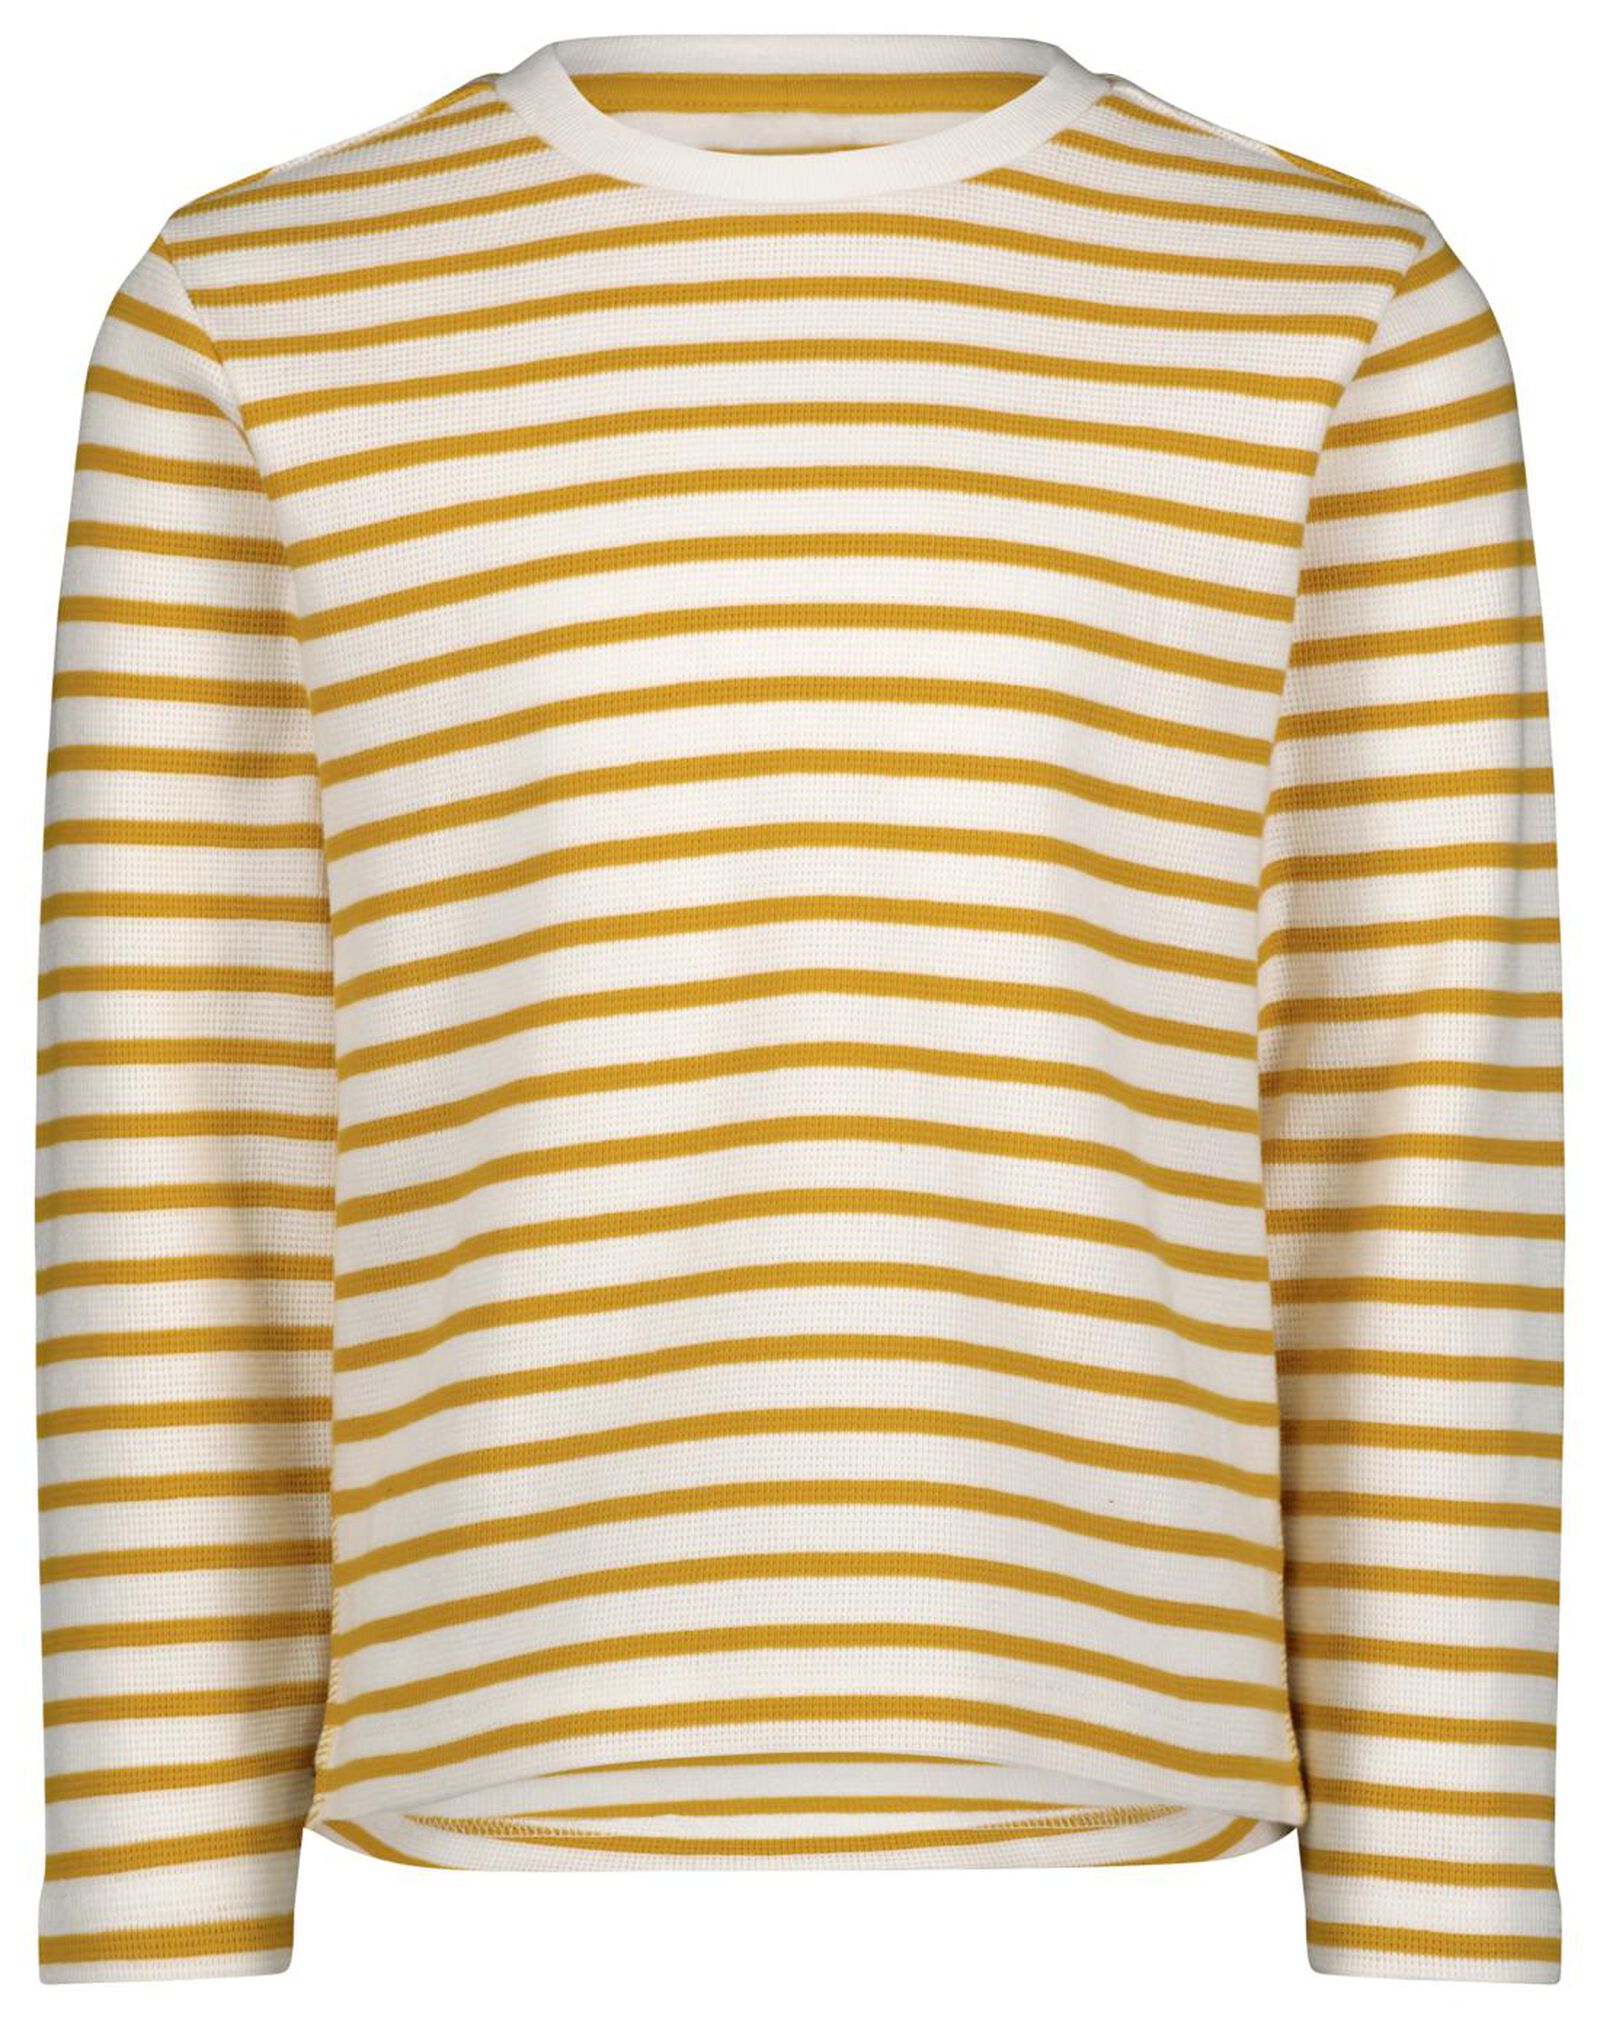 Kinder-Shirt, Streifen gelb 134/140 - 30774736 - HEMA